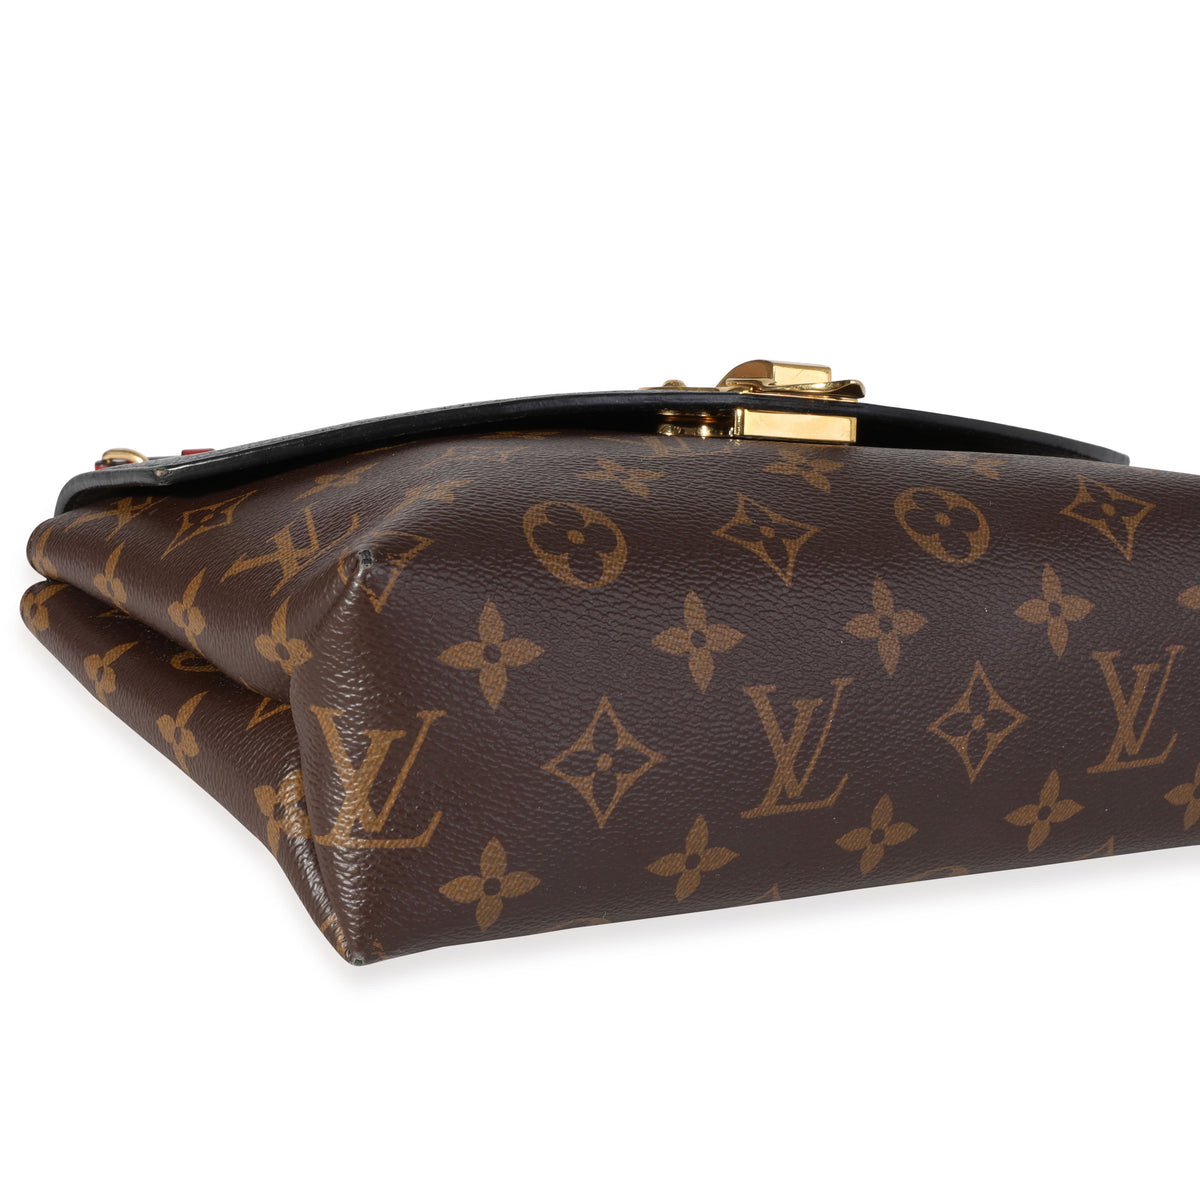 Louis Vuitton Saint Placide Monogram Canvas Crossbody Bag